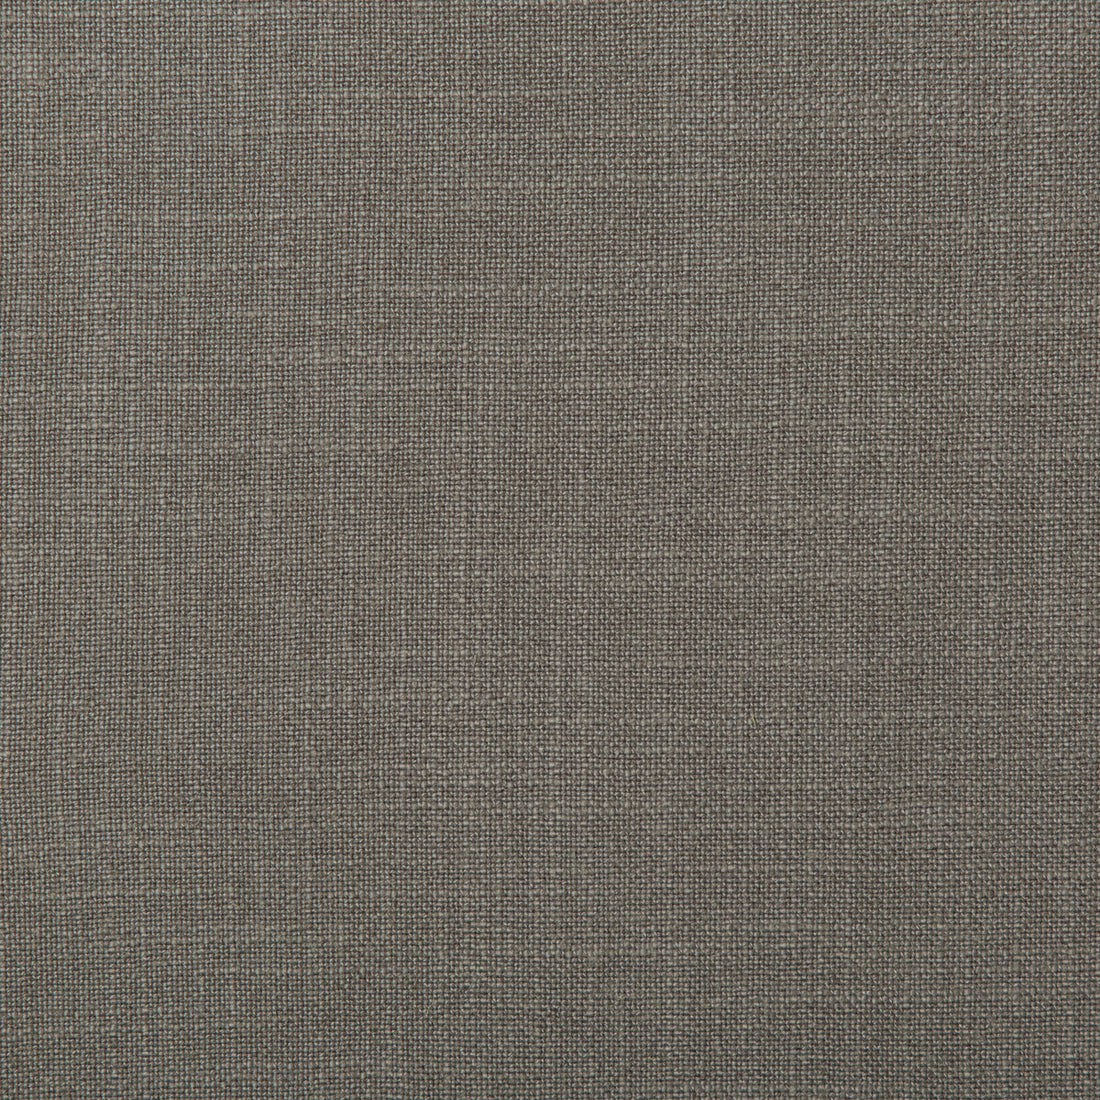 Kravet Basics fabric in 35783-21 color - pattern 35783.21.0 - by Kravet Basics